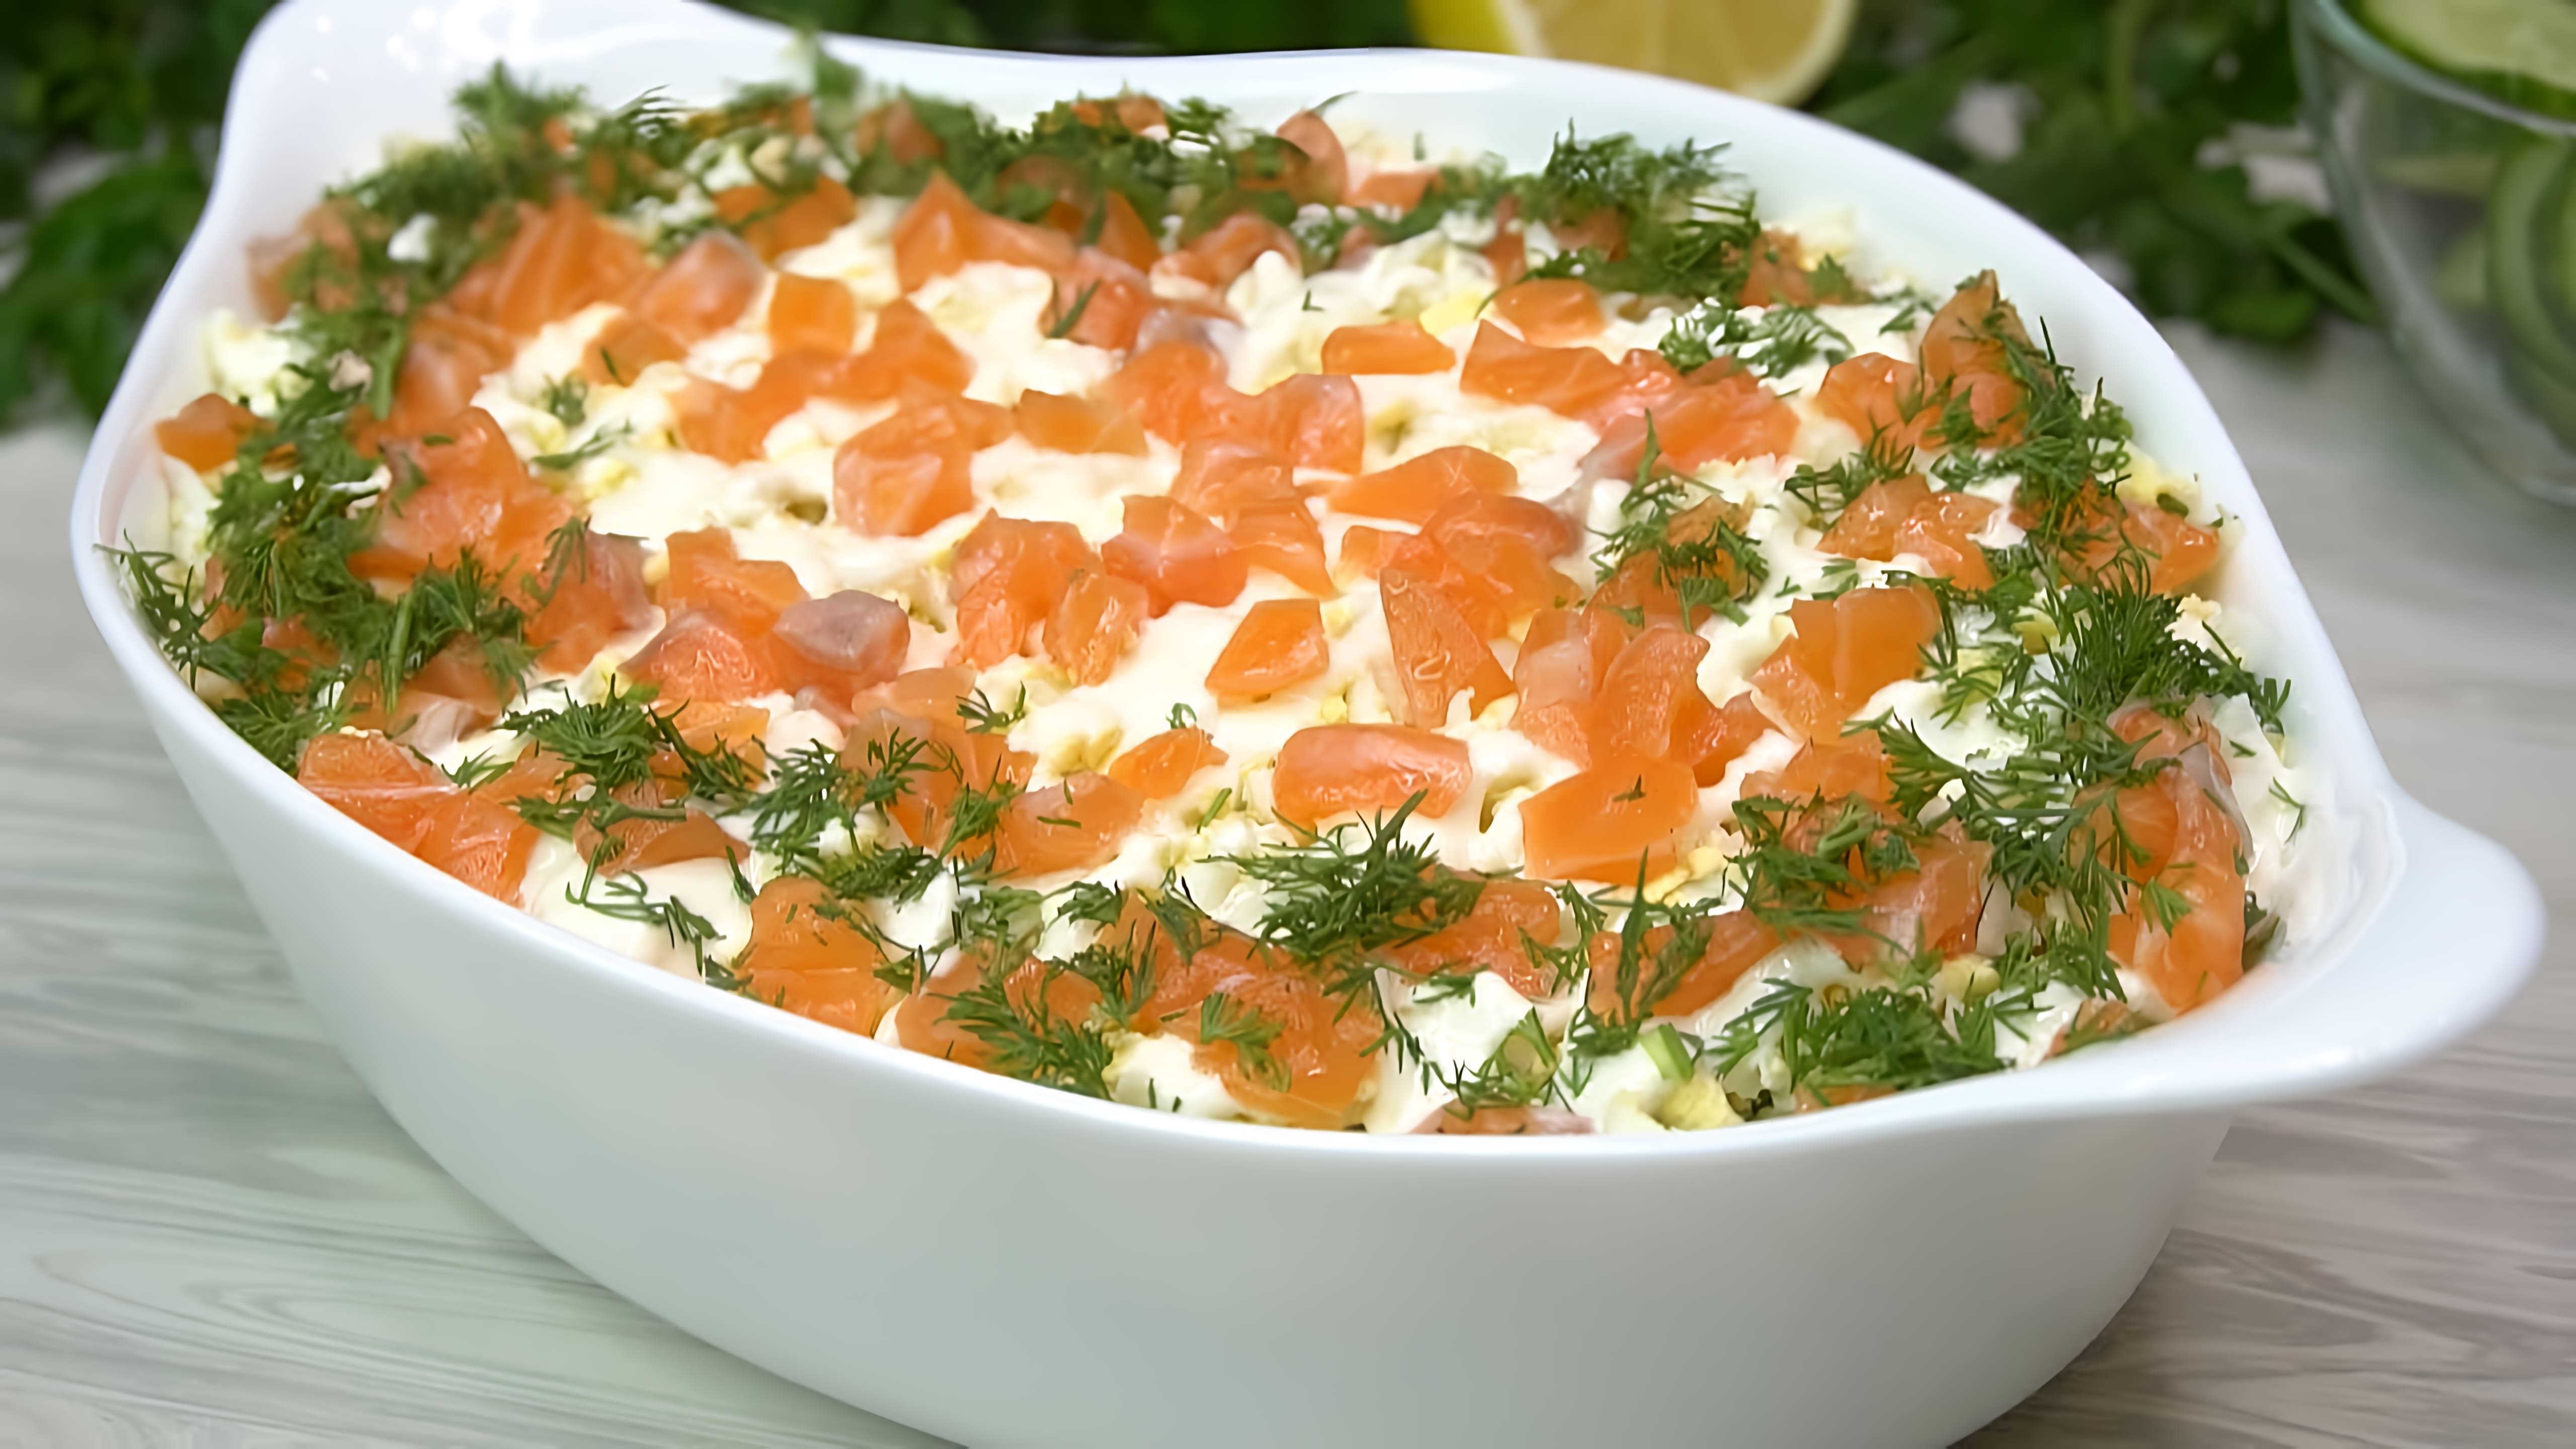 В этом видео демонстрируется рецепт очень вкусного салата с семгой и свежим огурцом